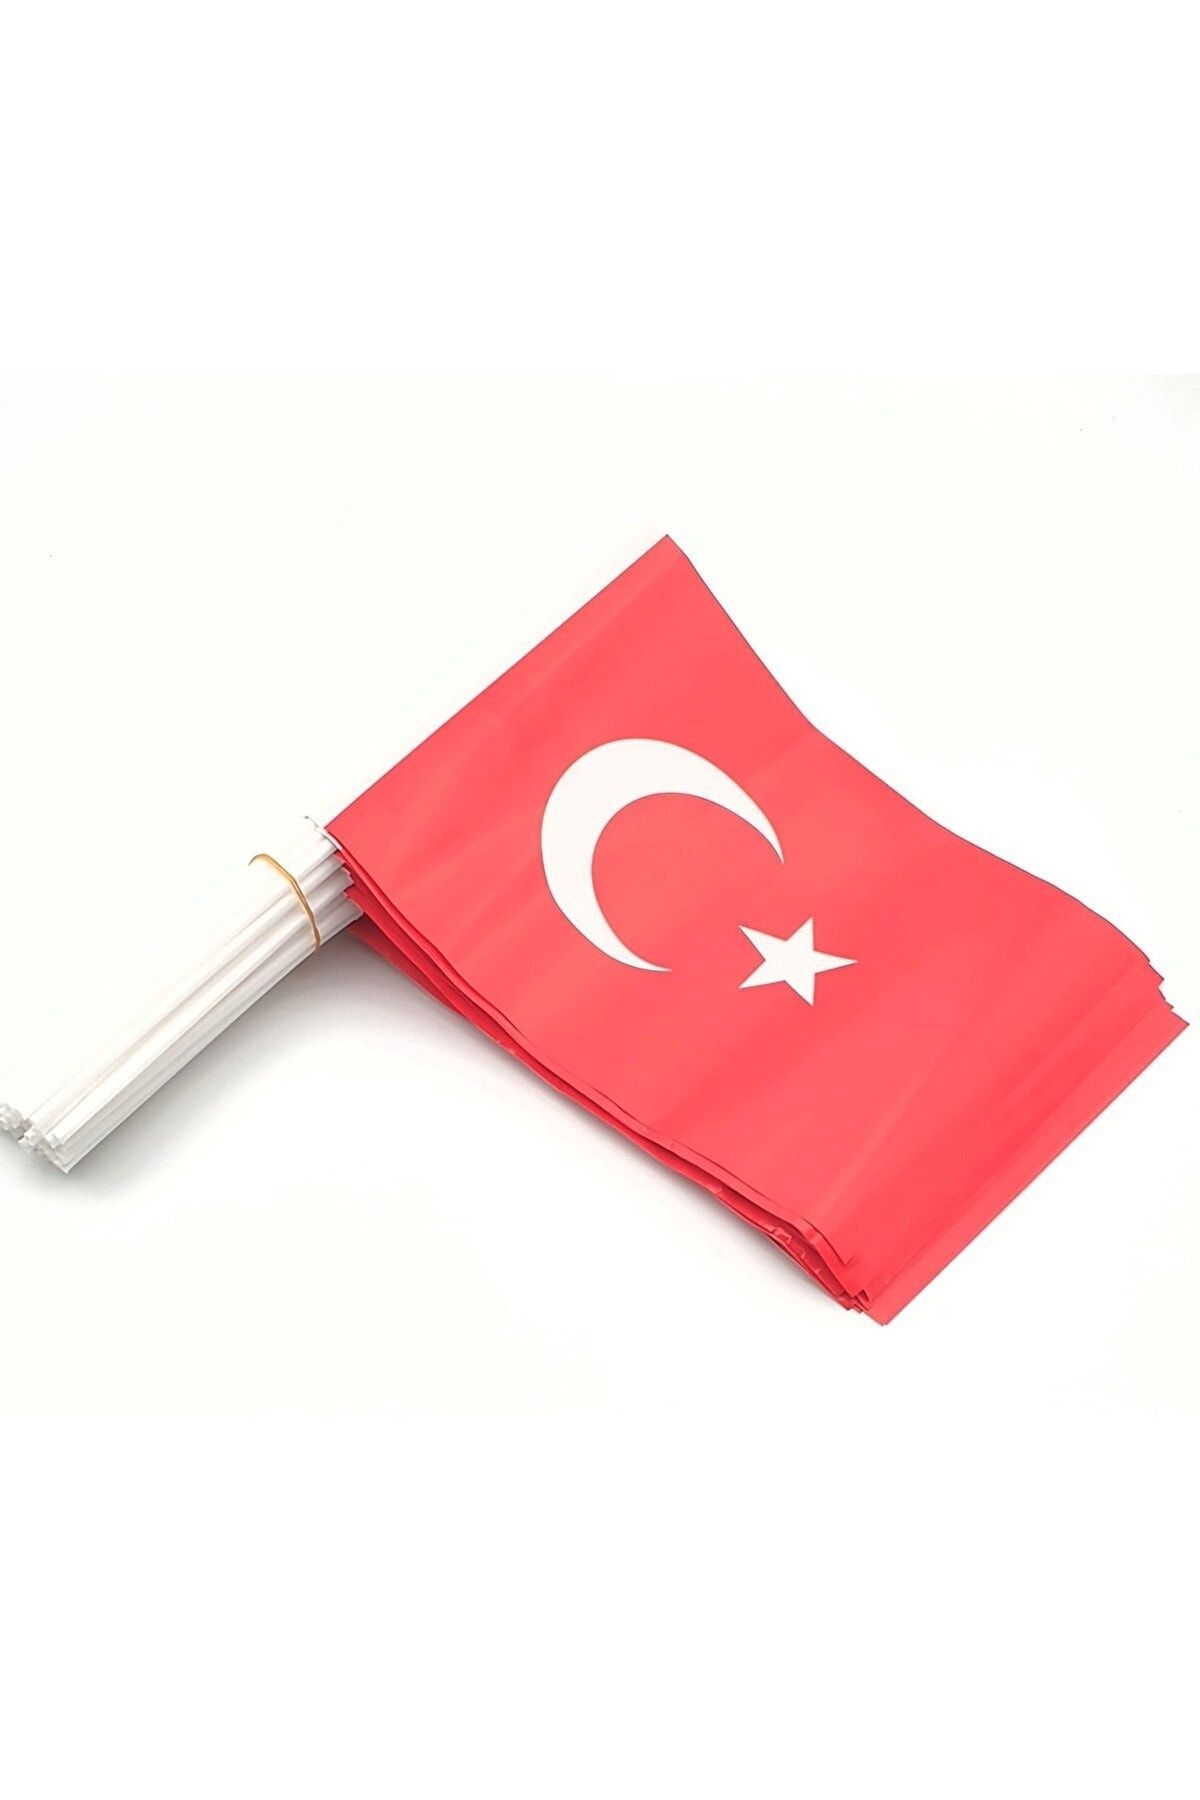 Eren Sopalı Türk Bayrağı Küçük (200 Lü Paket)